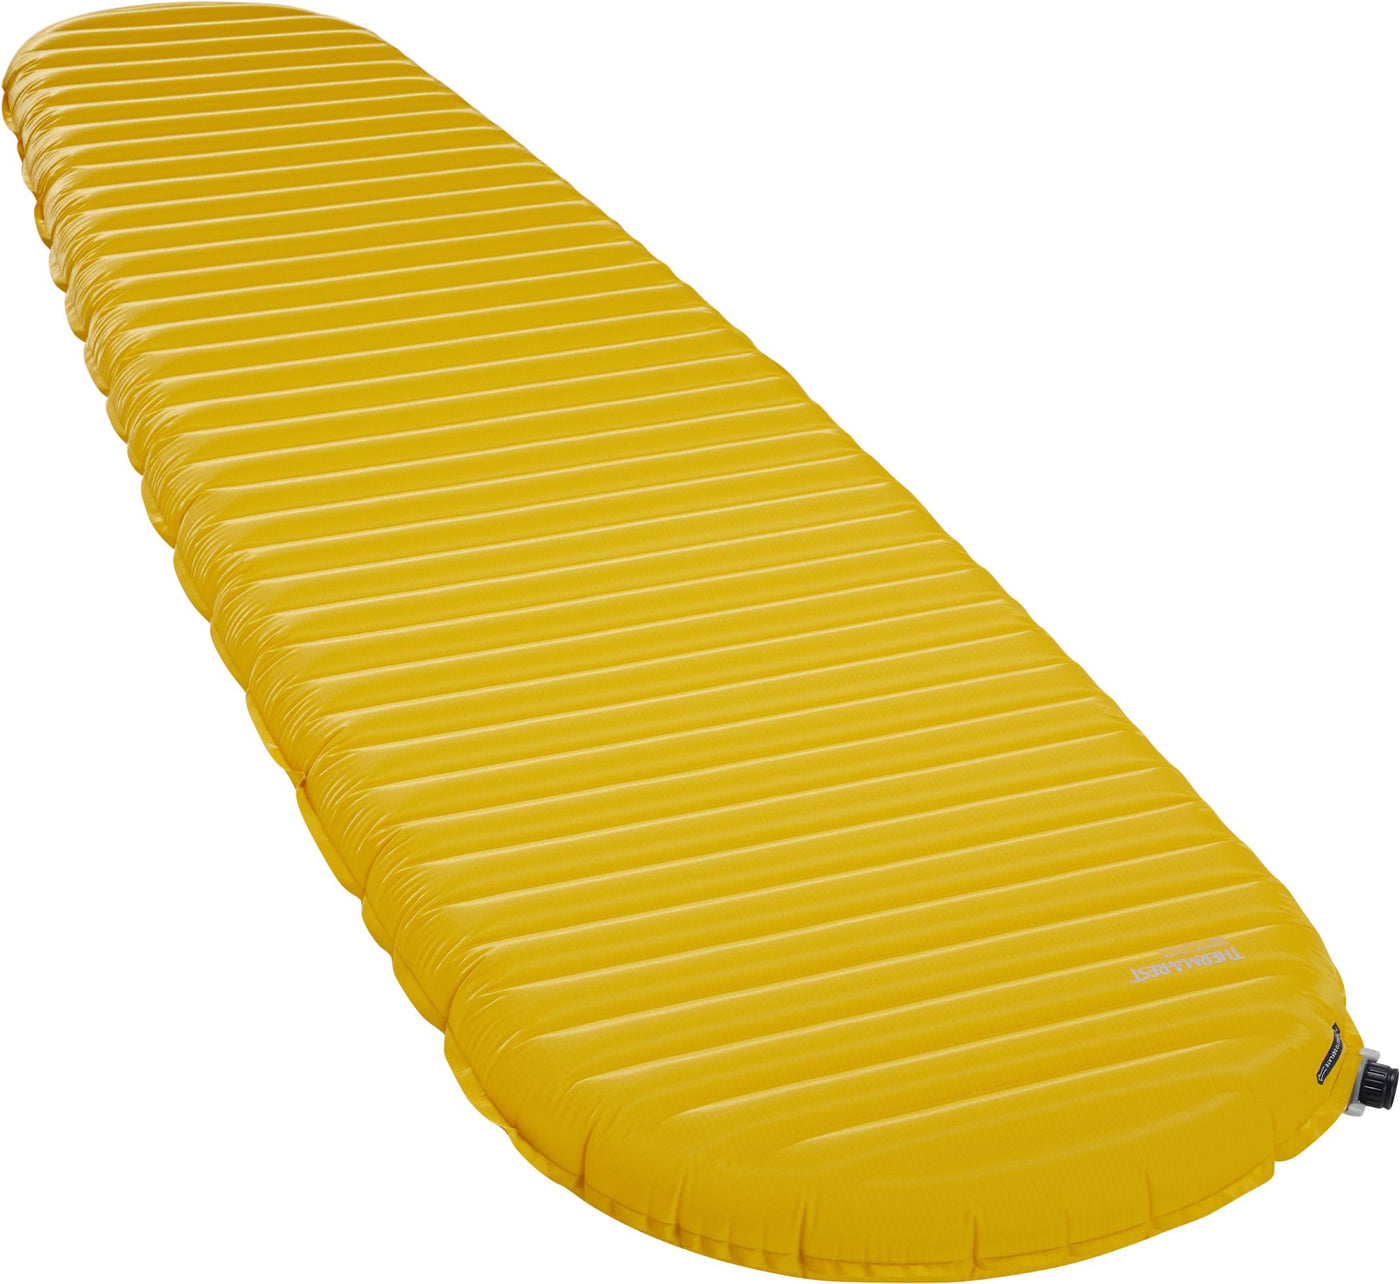 NeoAir® XLite™ NXT Sleeping Pad